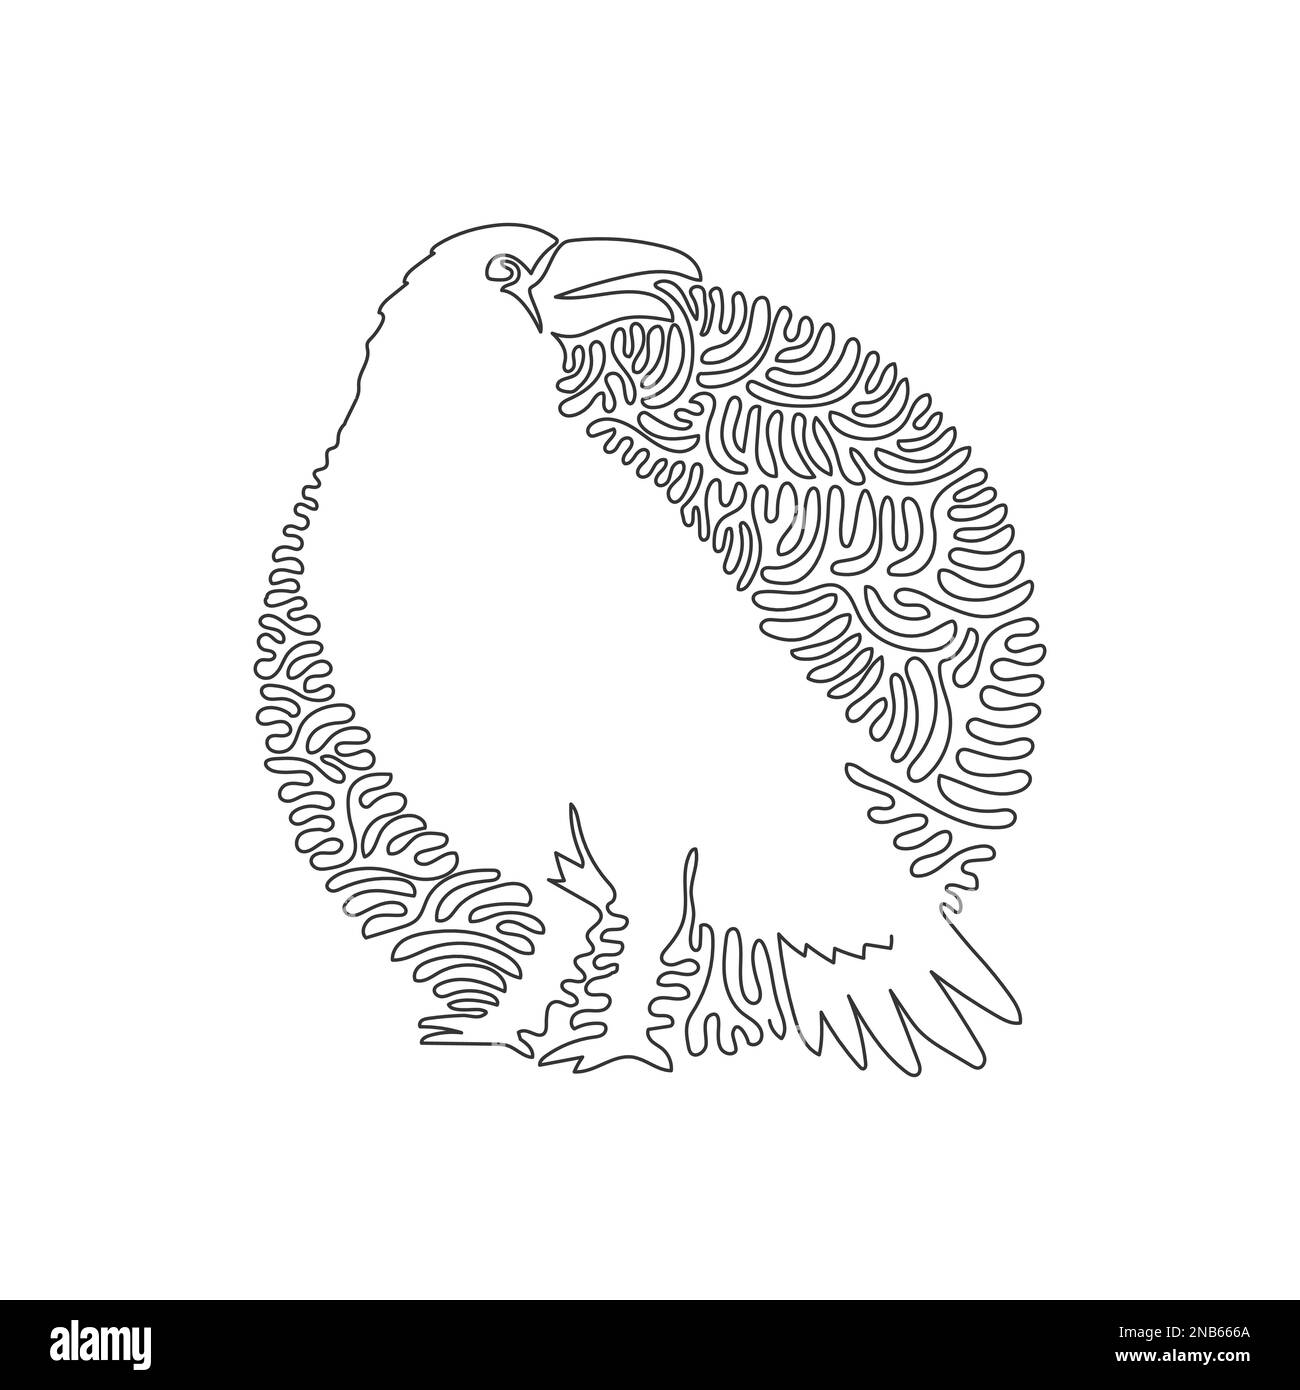 Disegno continuo di una linea curva dell'arte astratta della corvo spaventosa Immagine vettoriale del tratto modificabile a riga singola di corvo per il logo Illustrazione Vettoriale